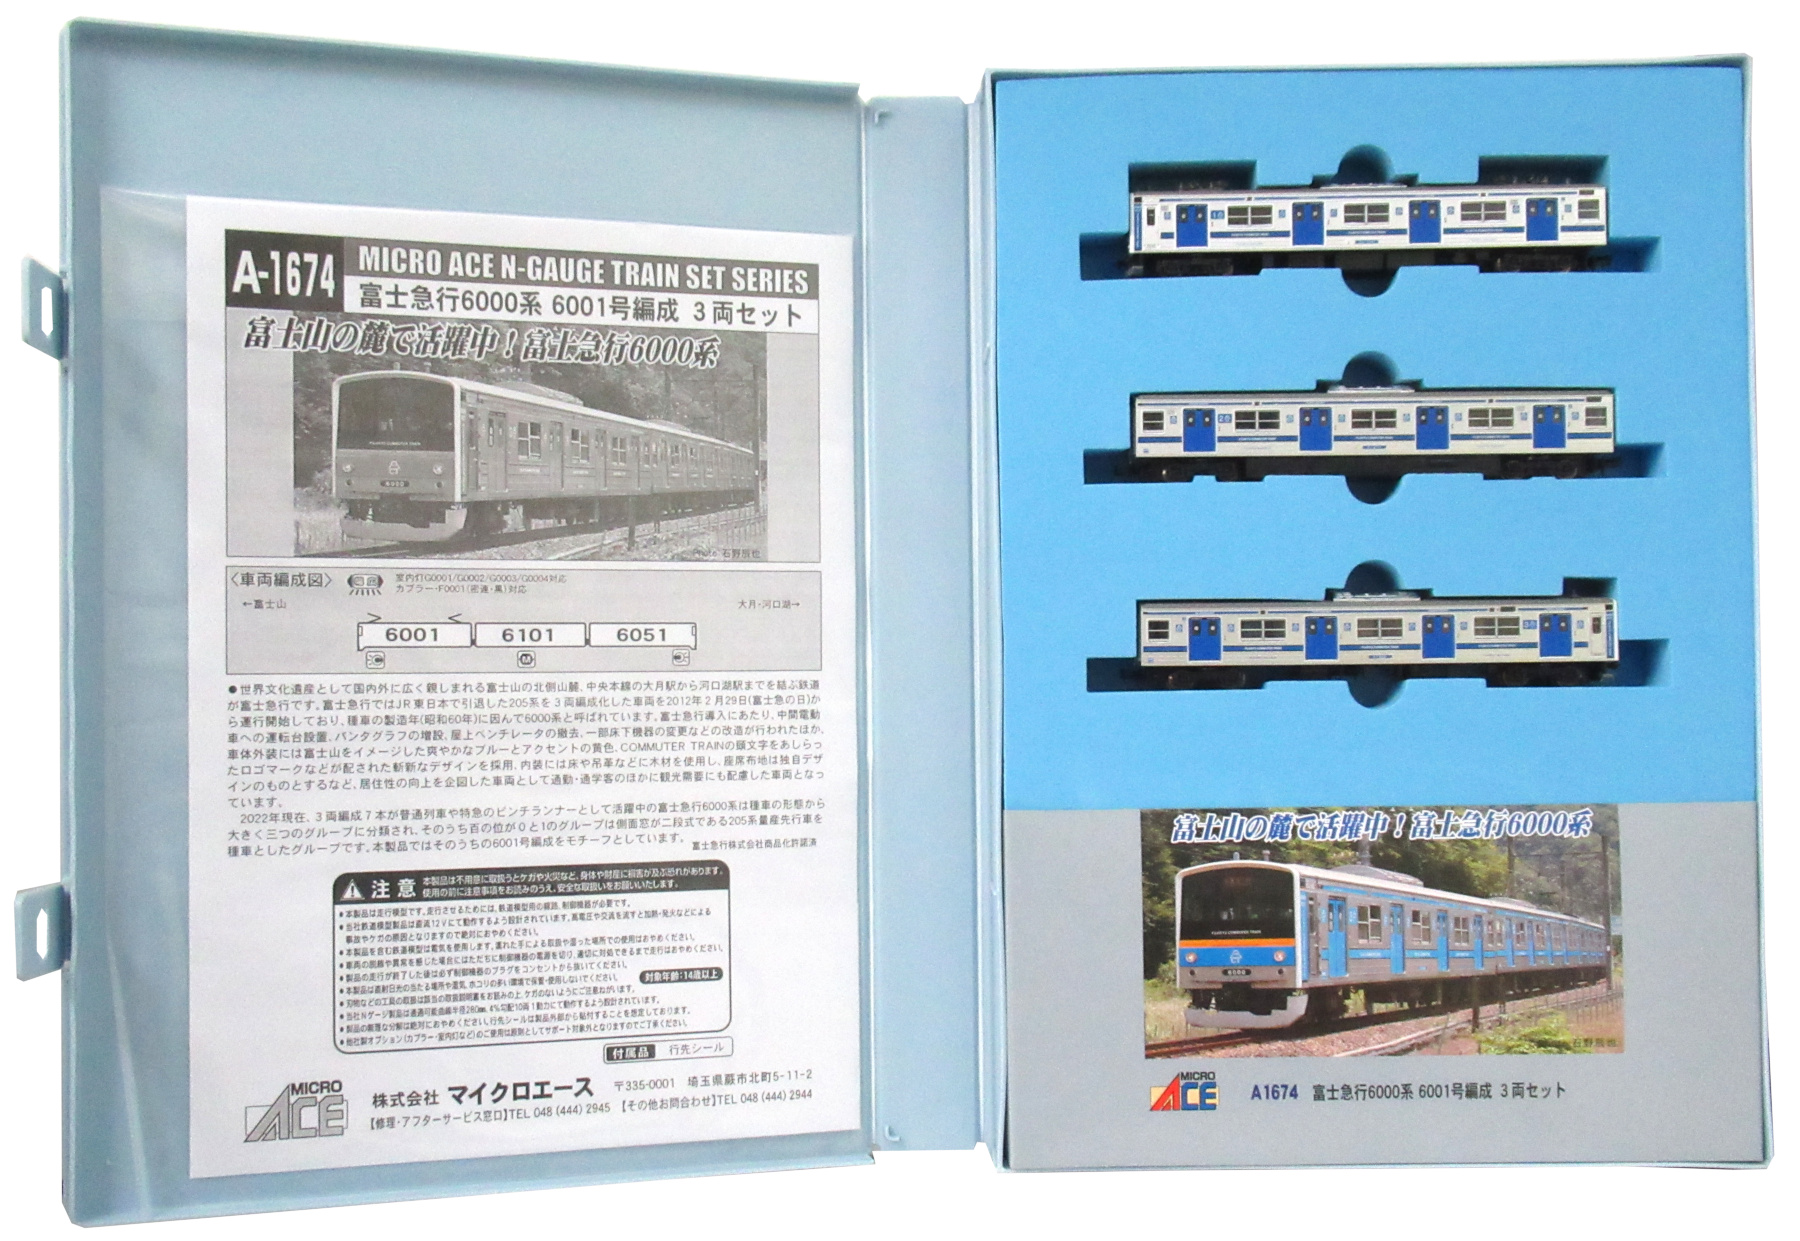 公式]鉄道模型(A1674富士急行6000系 6001号編成 3両セット)商品詳細 ...